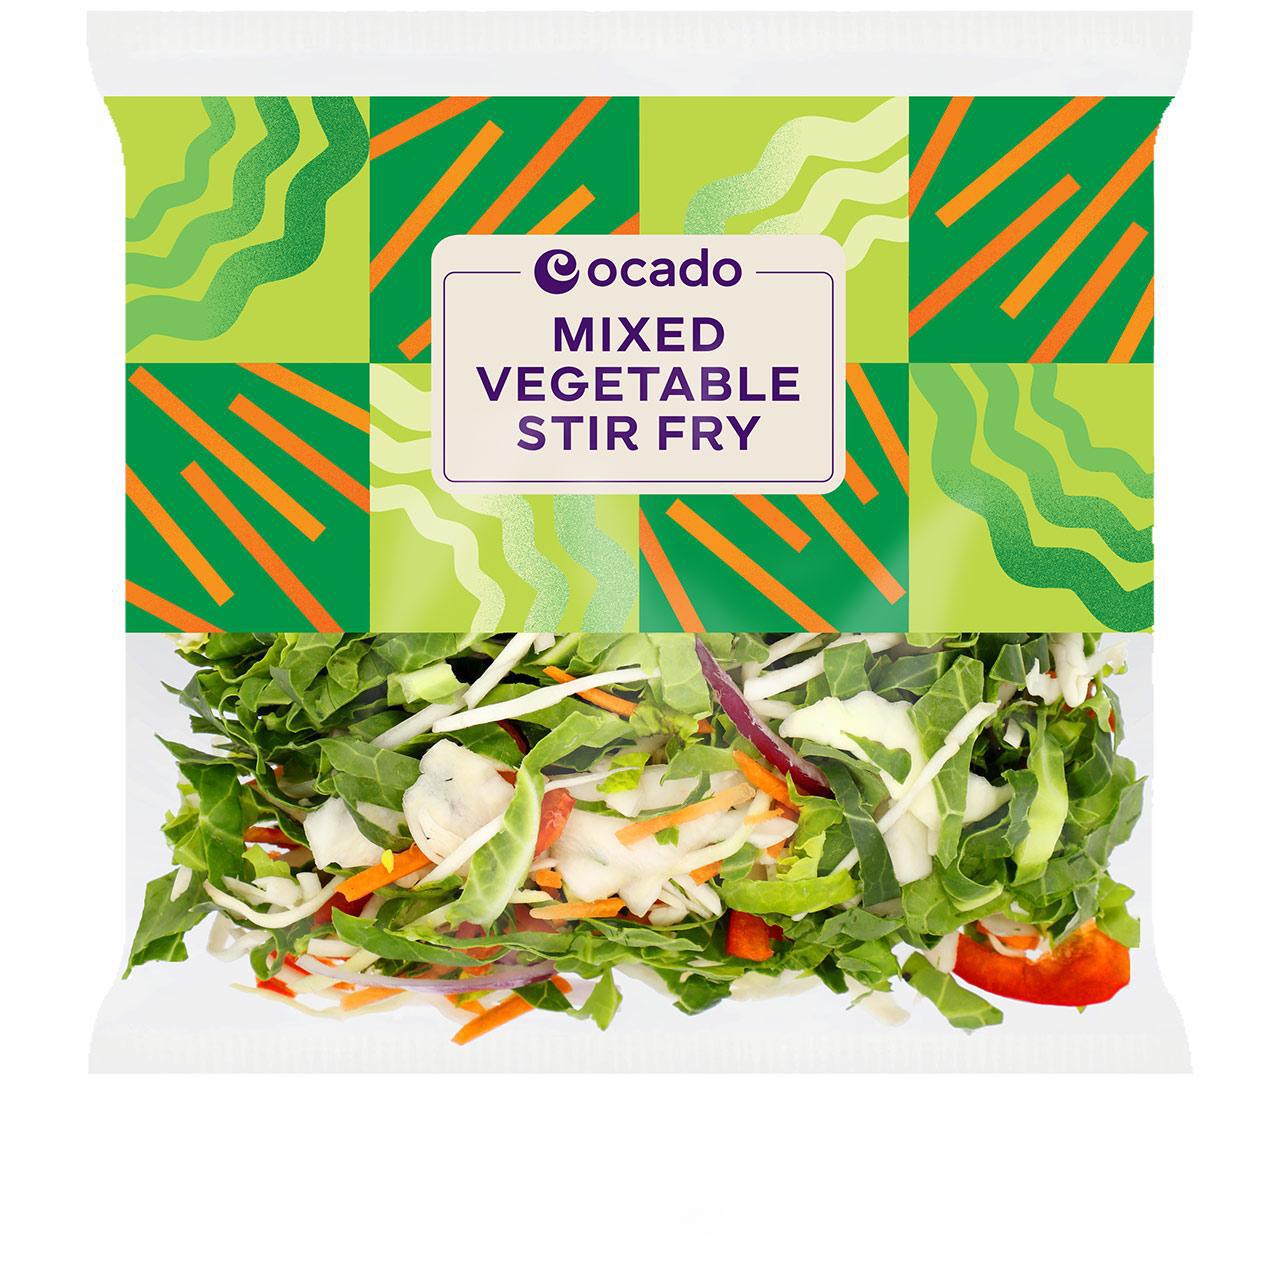 Ocado Mixed Vegetable Stir Fry 325g